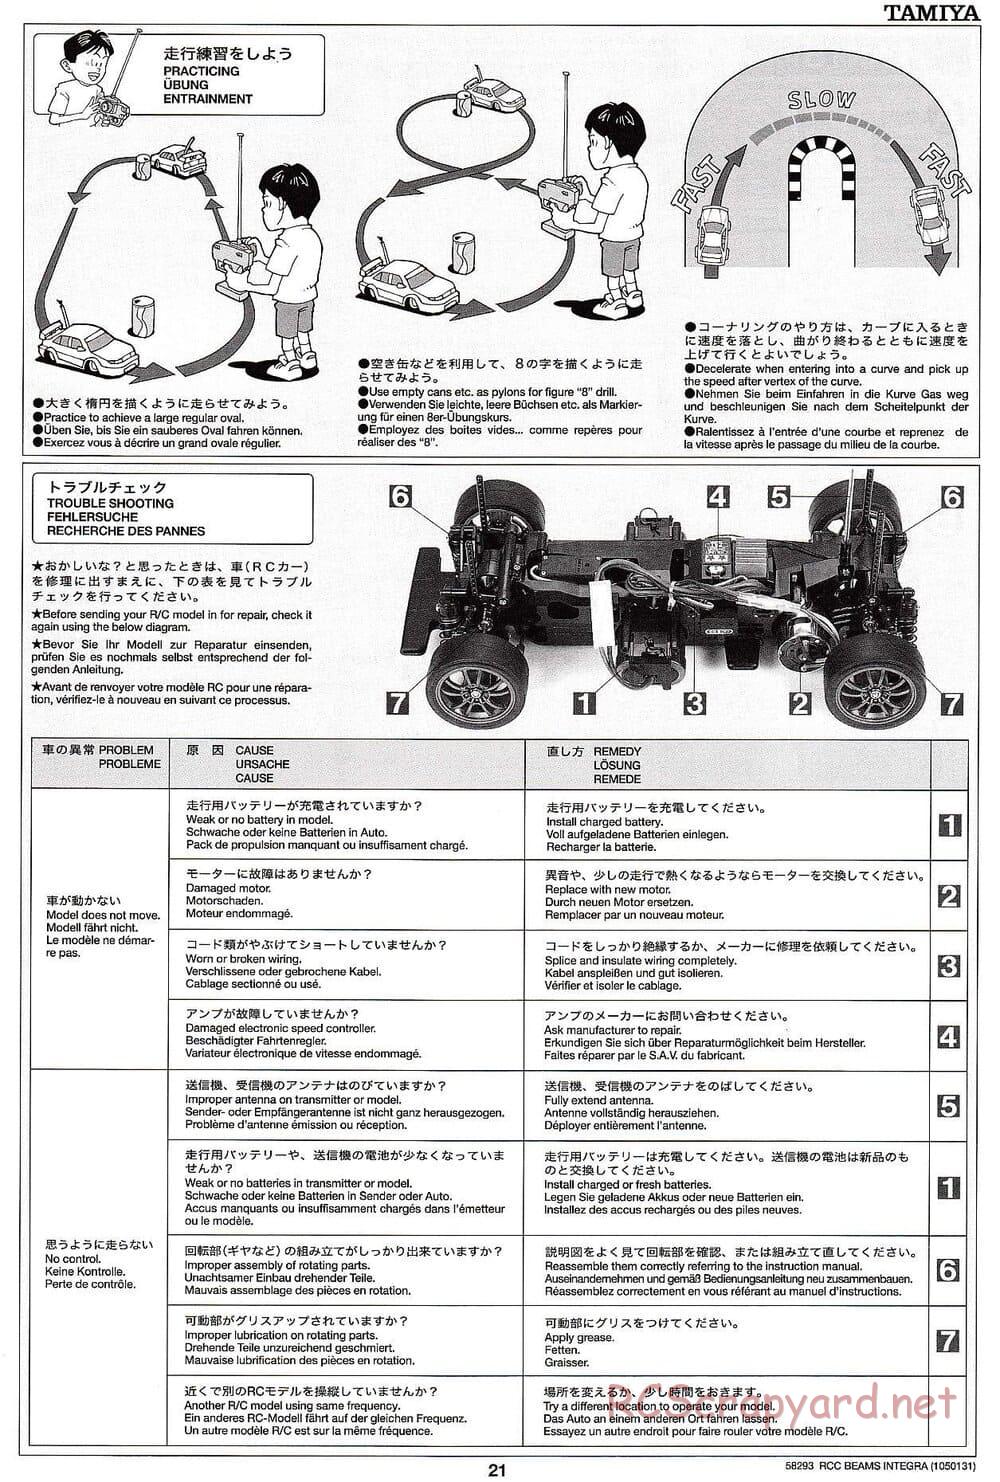 Tamiya - Beams Integra - TL-01 LA Chassis - Manual - Page 21